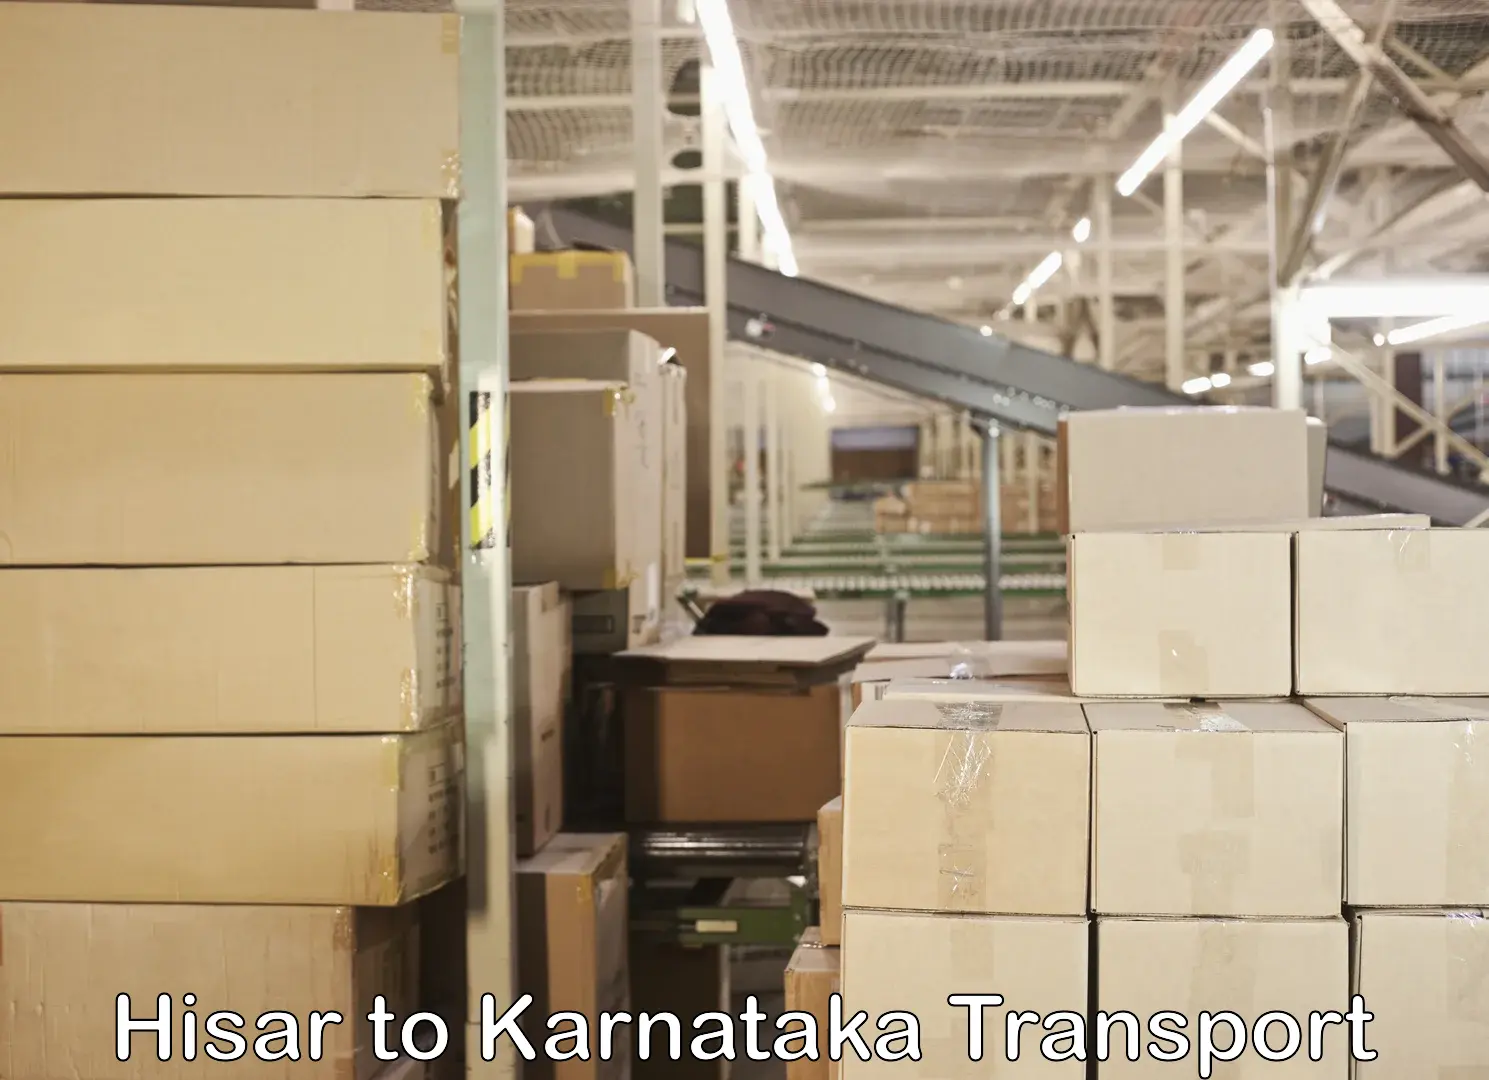 Online transport booking Hisar to Karnataka